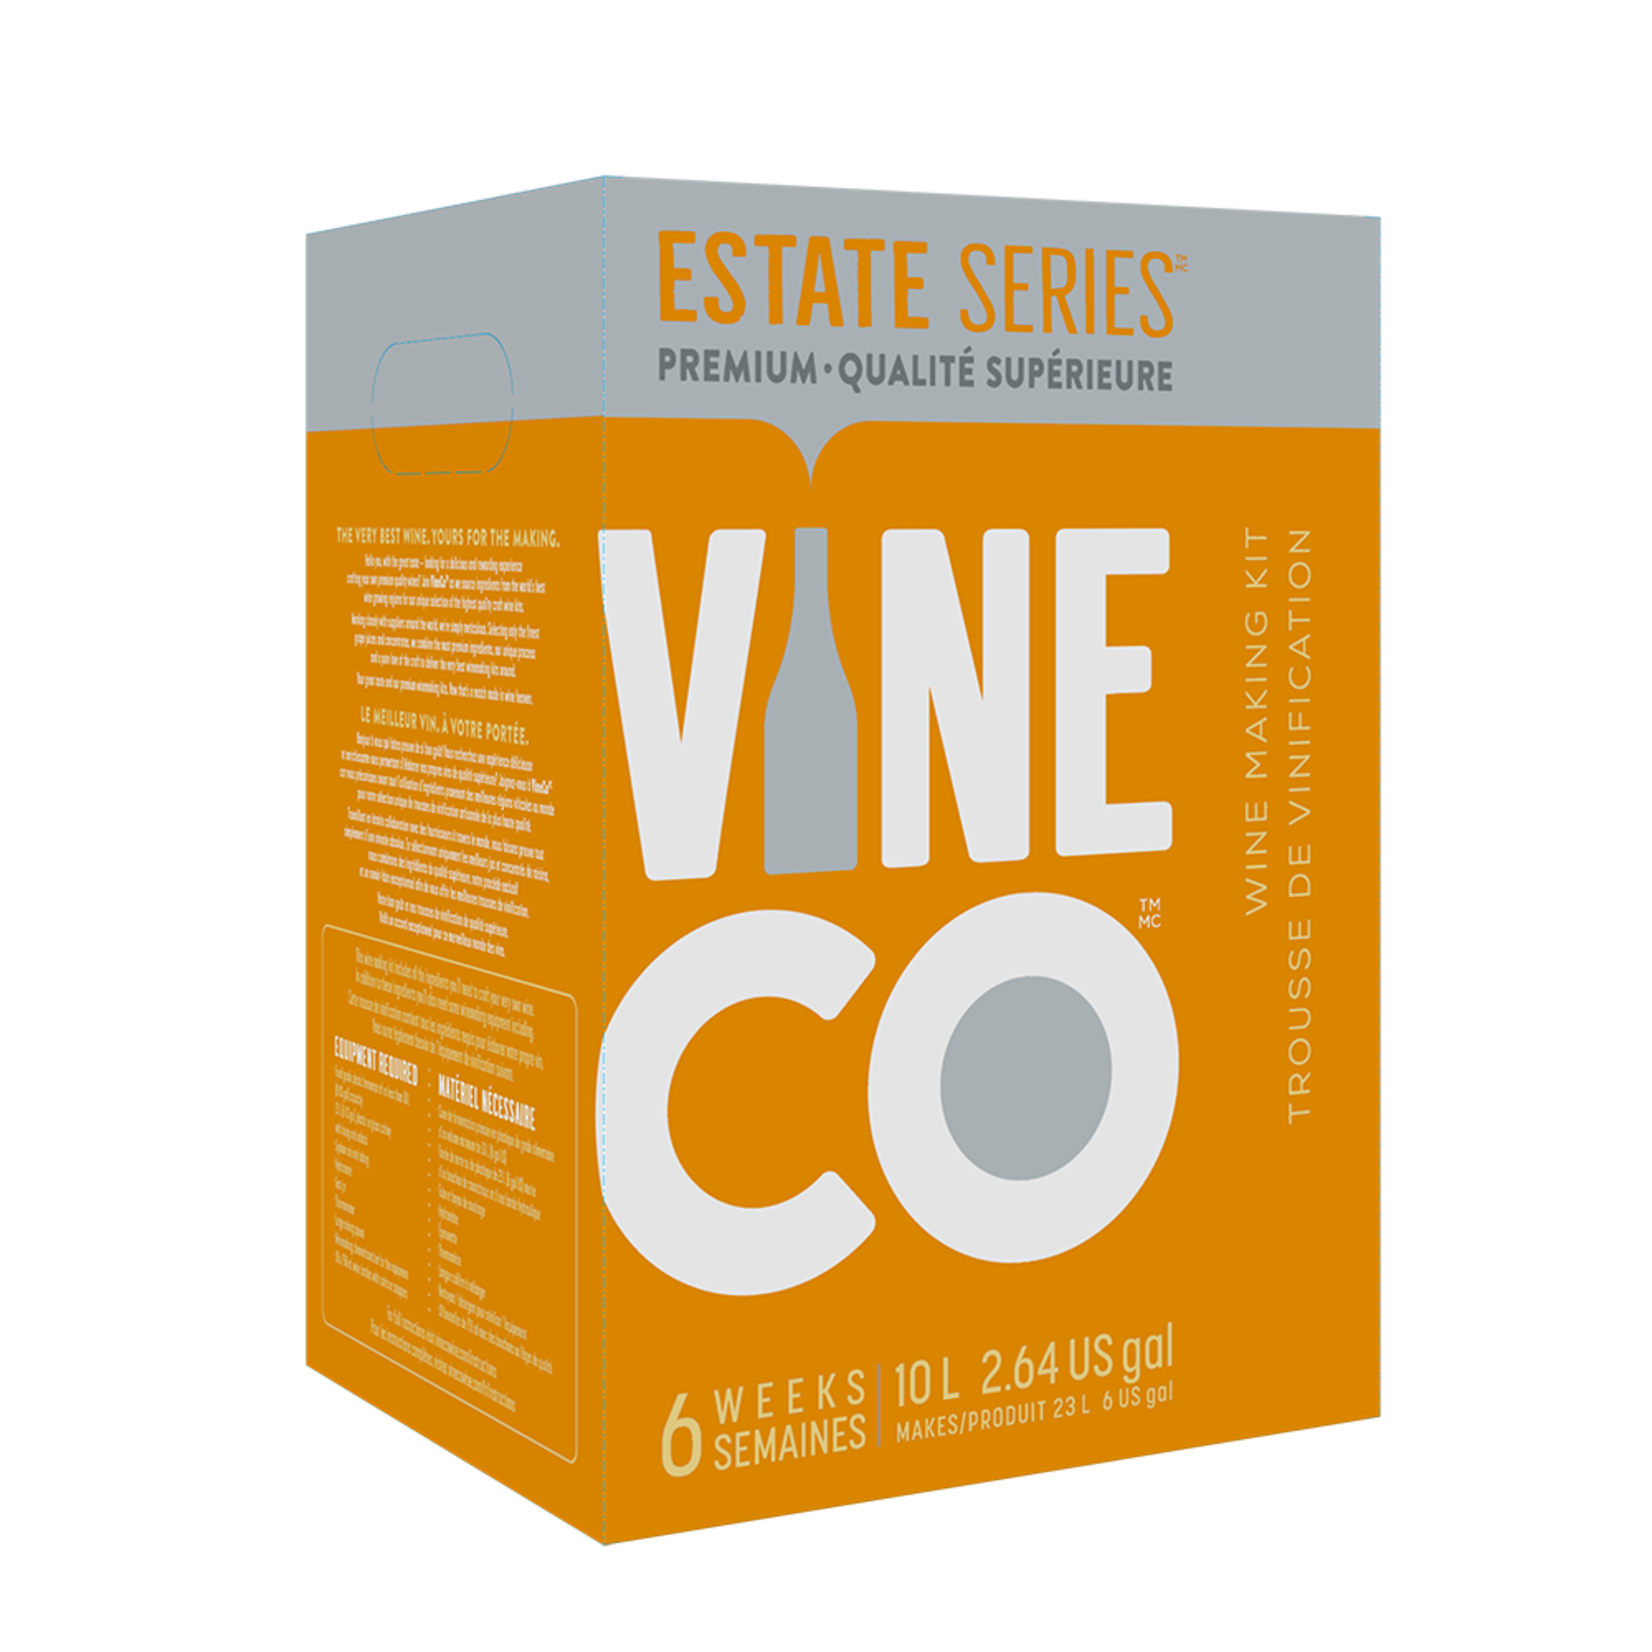 Vine Co. Estate Series Cab Merlot, CAL